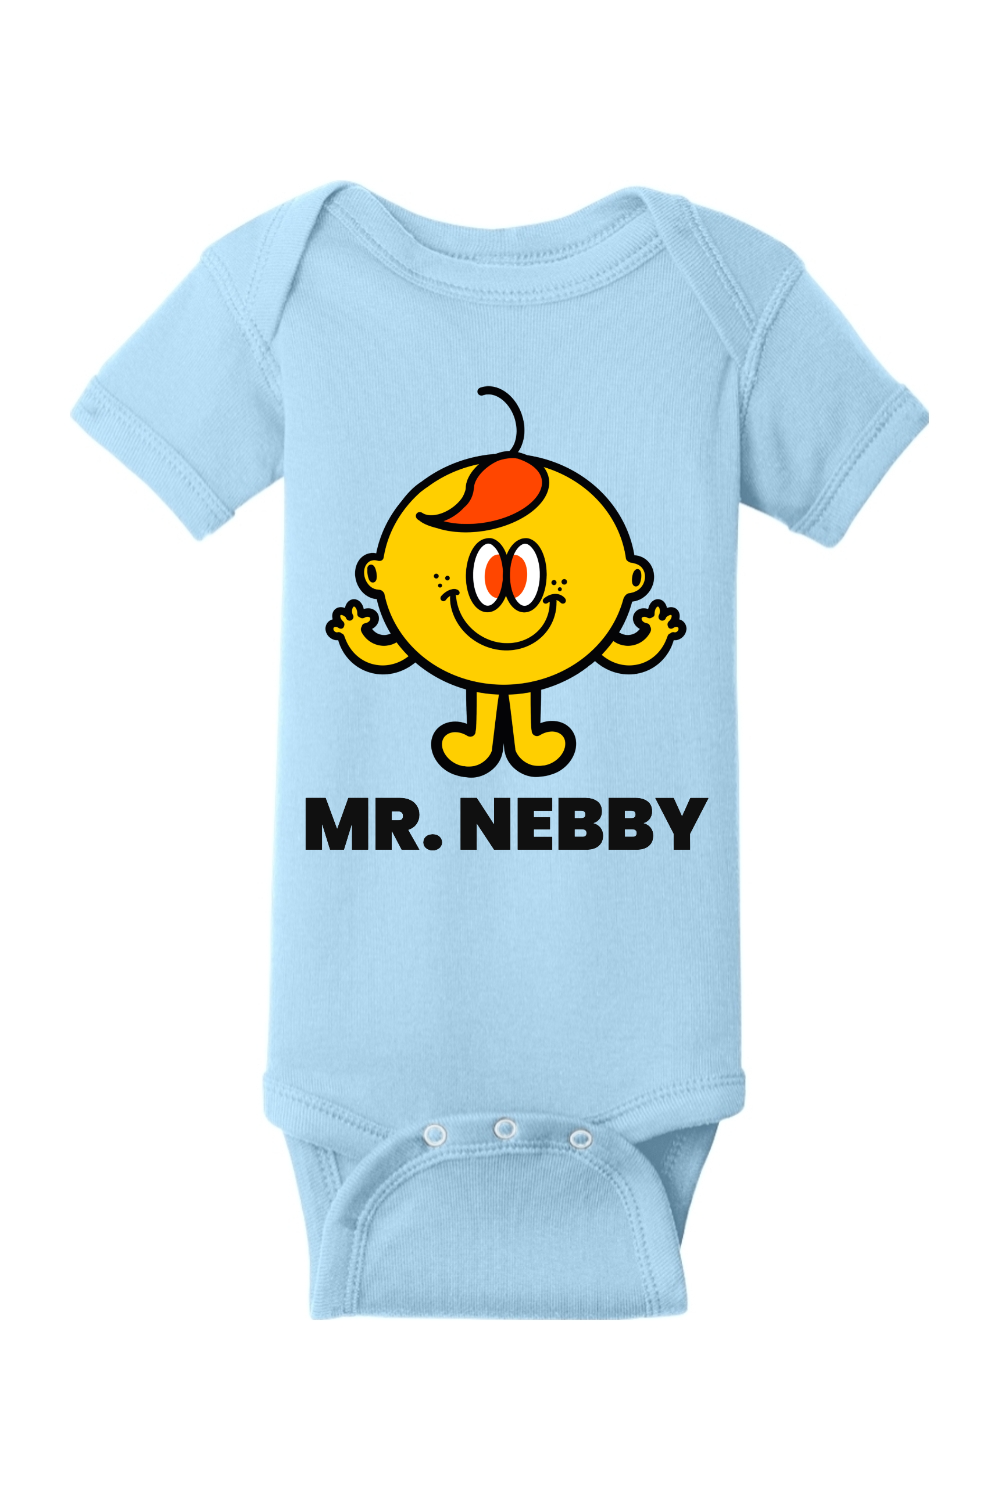 Mr. Nebby - Infant Short Sleeve Baby Rib Bodysuit - Yinzylvania